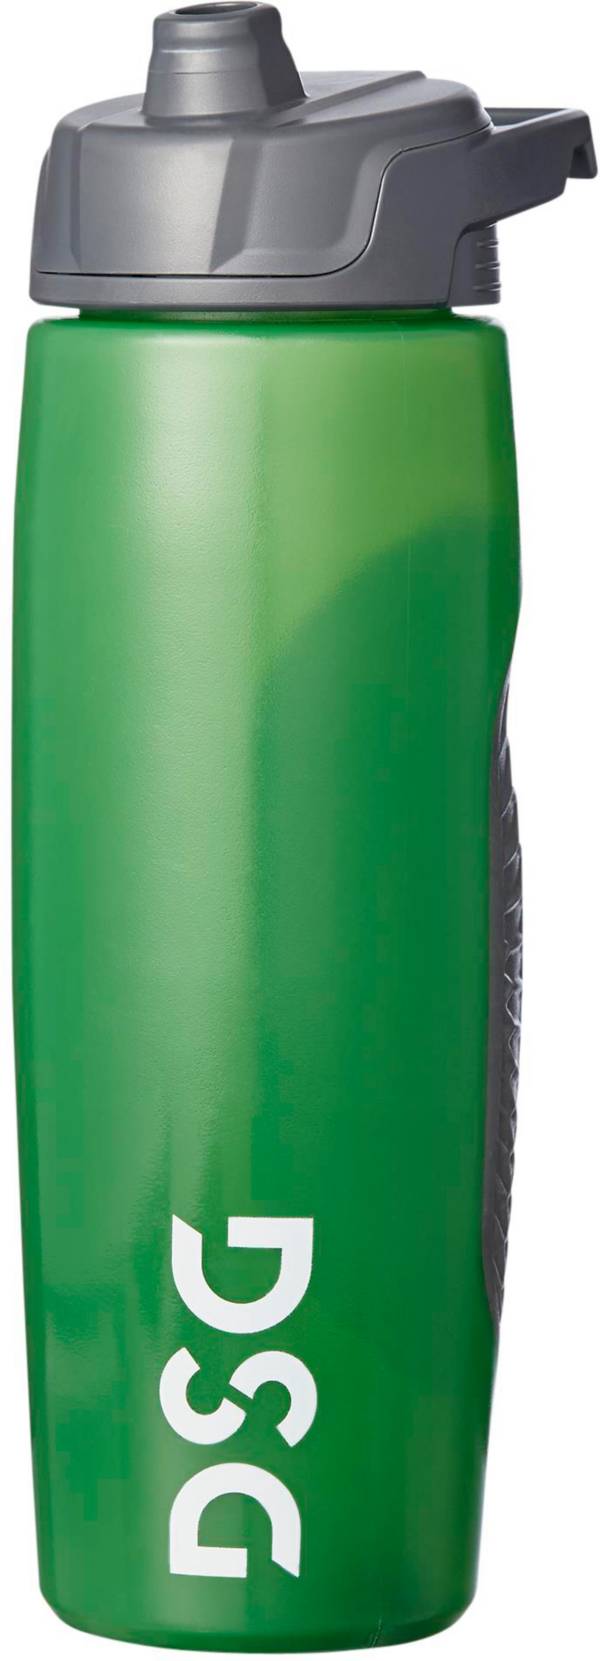 DSG 24 oz. Squeeze Bottle product image